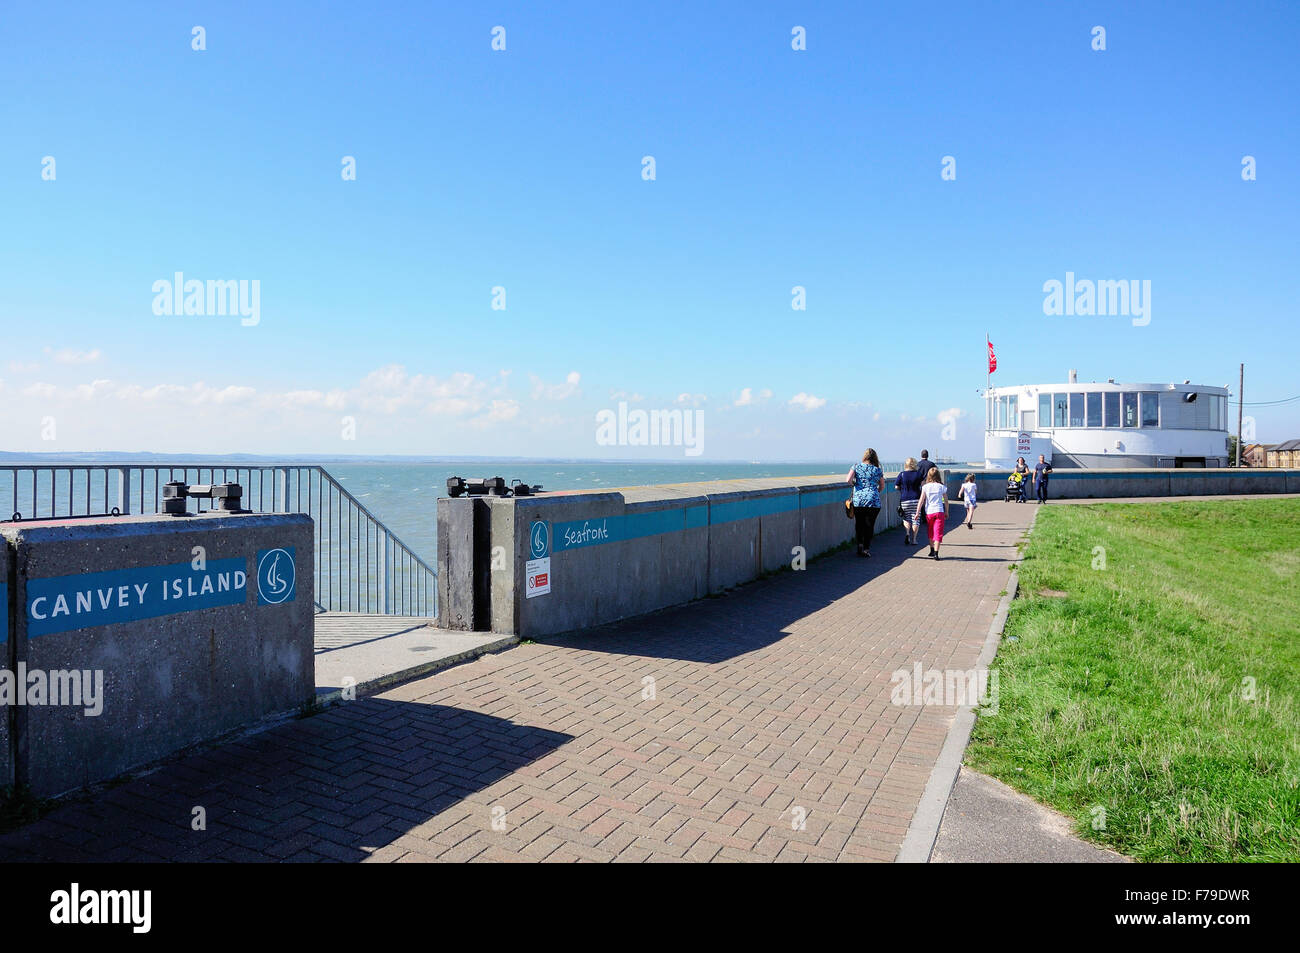 Canvey Island direkt am Meer mit Labworth Café, Canvey Insel, Essex, England, Vereinigtes Königreich Stockfoto